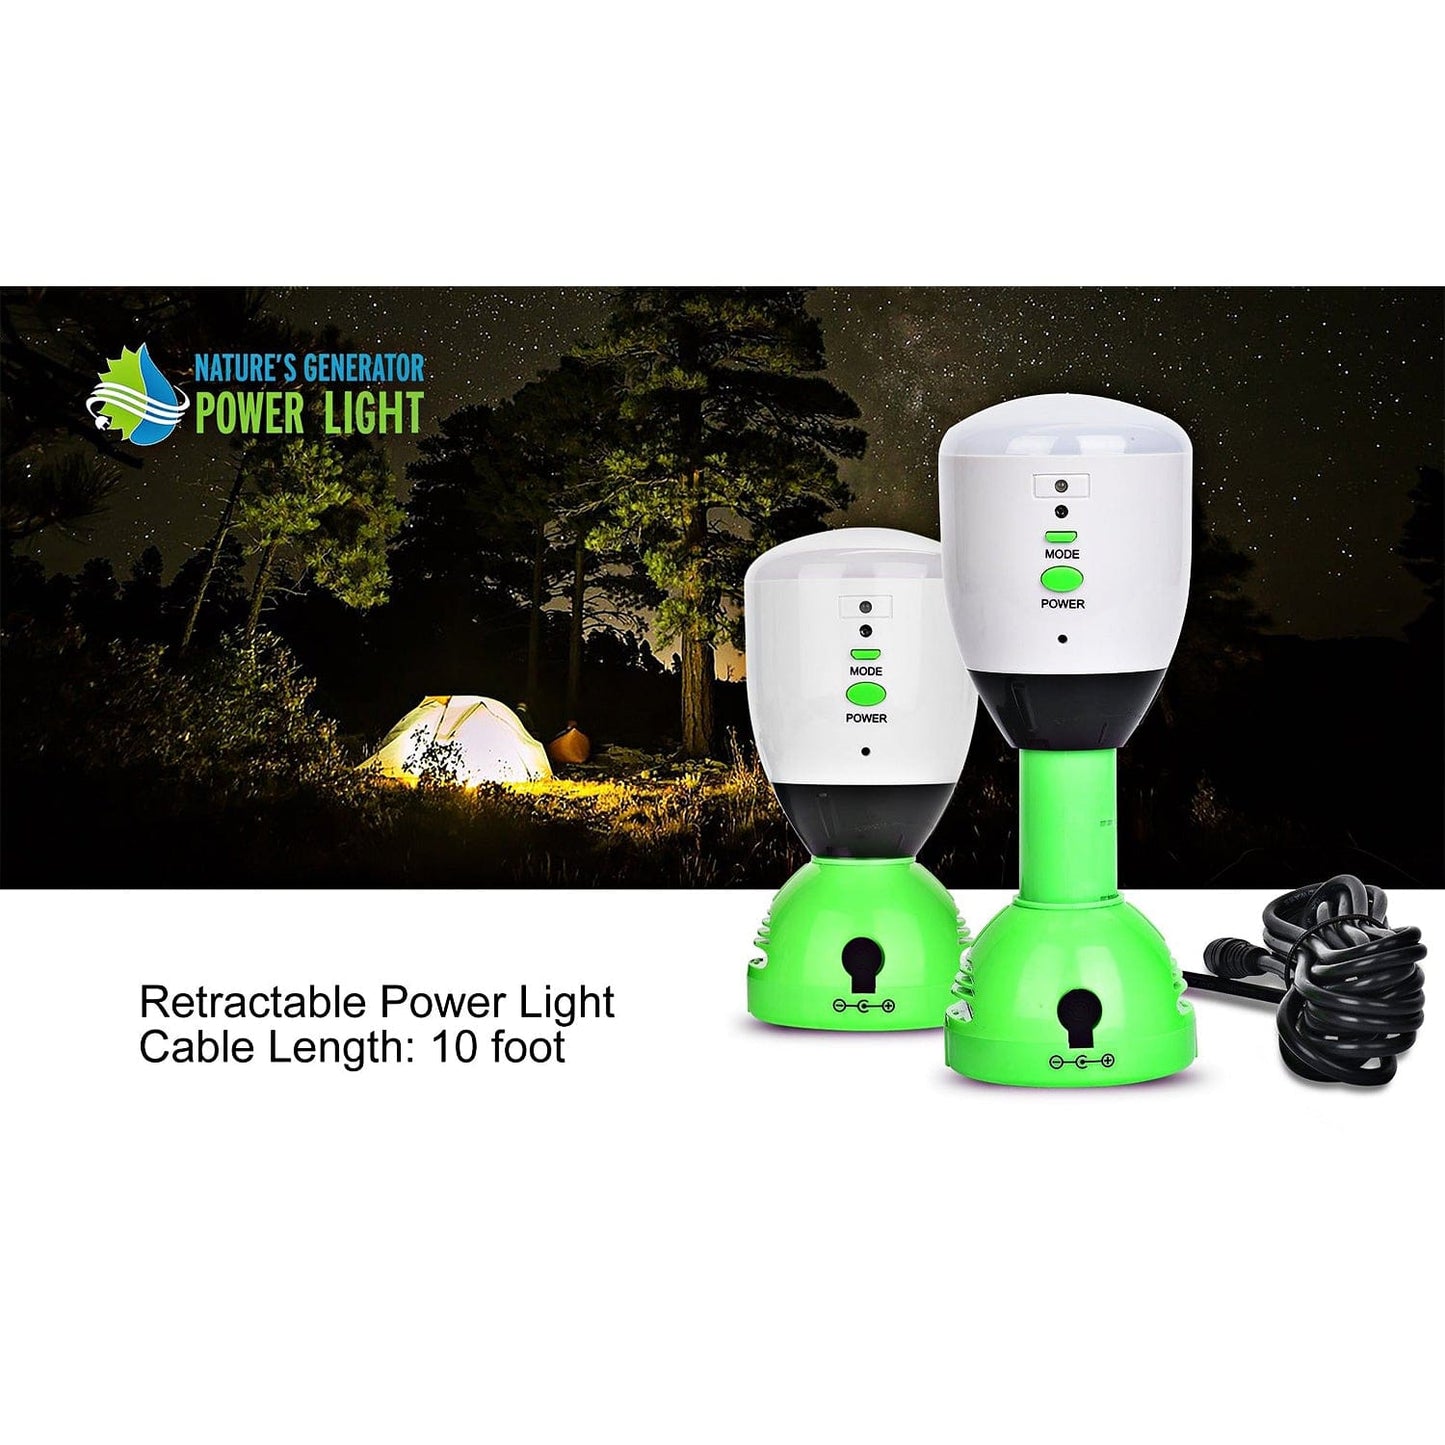 Nature's Generator Power Light - 4 Pack